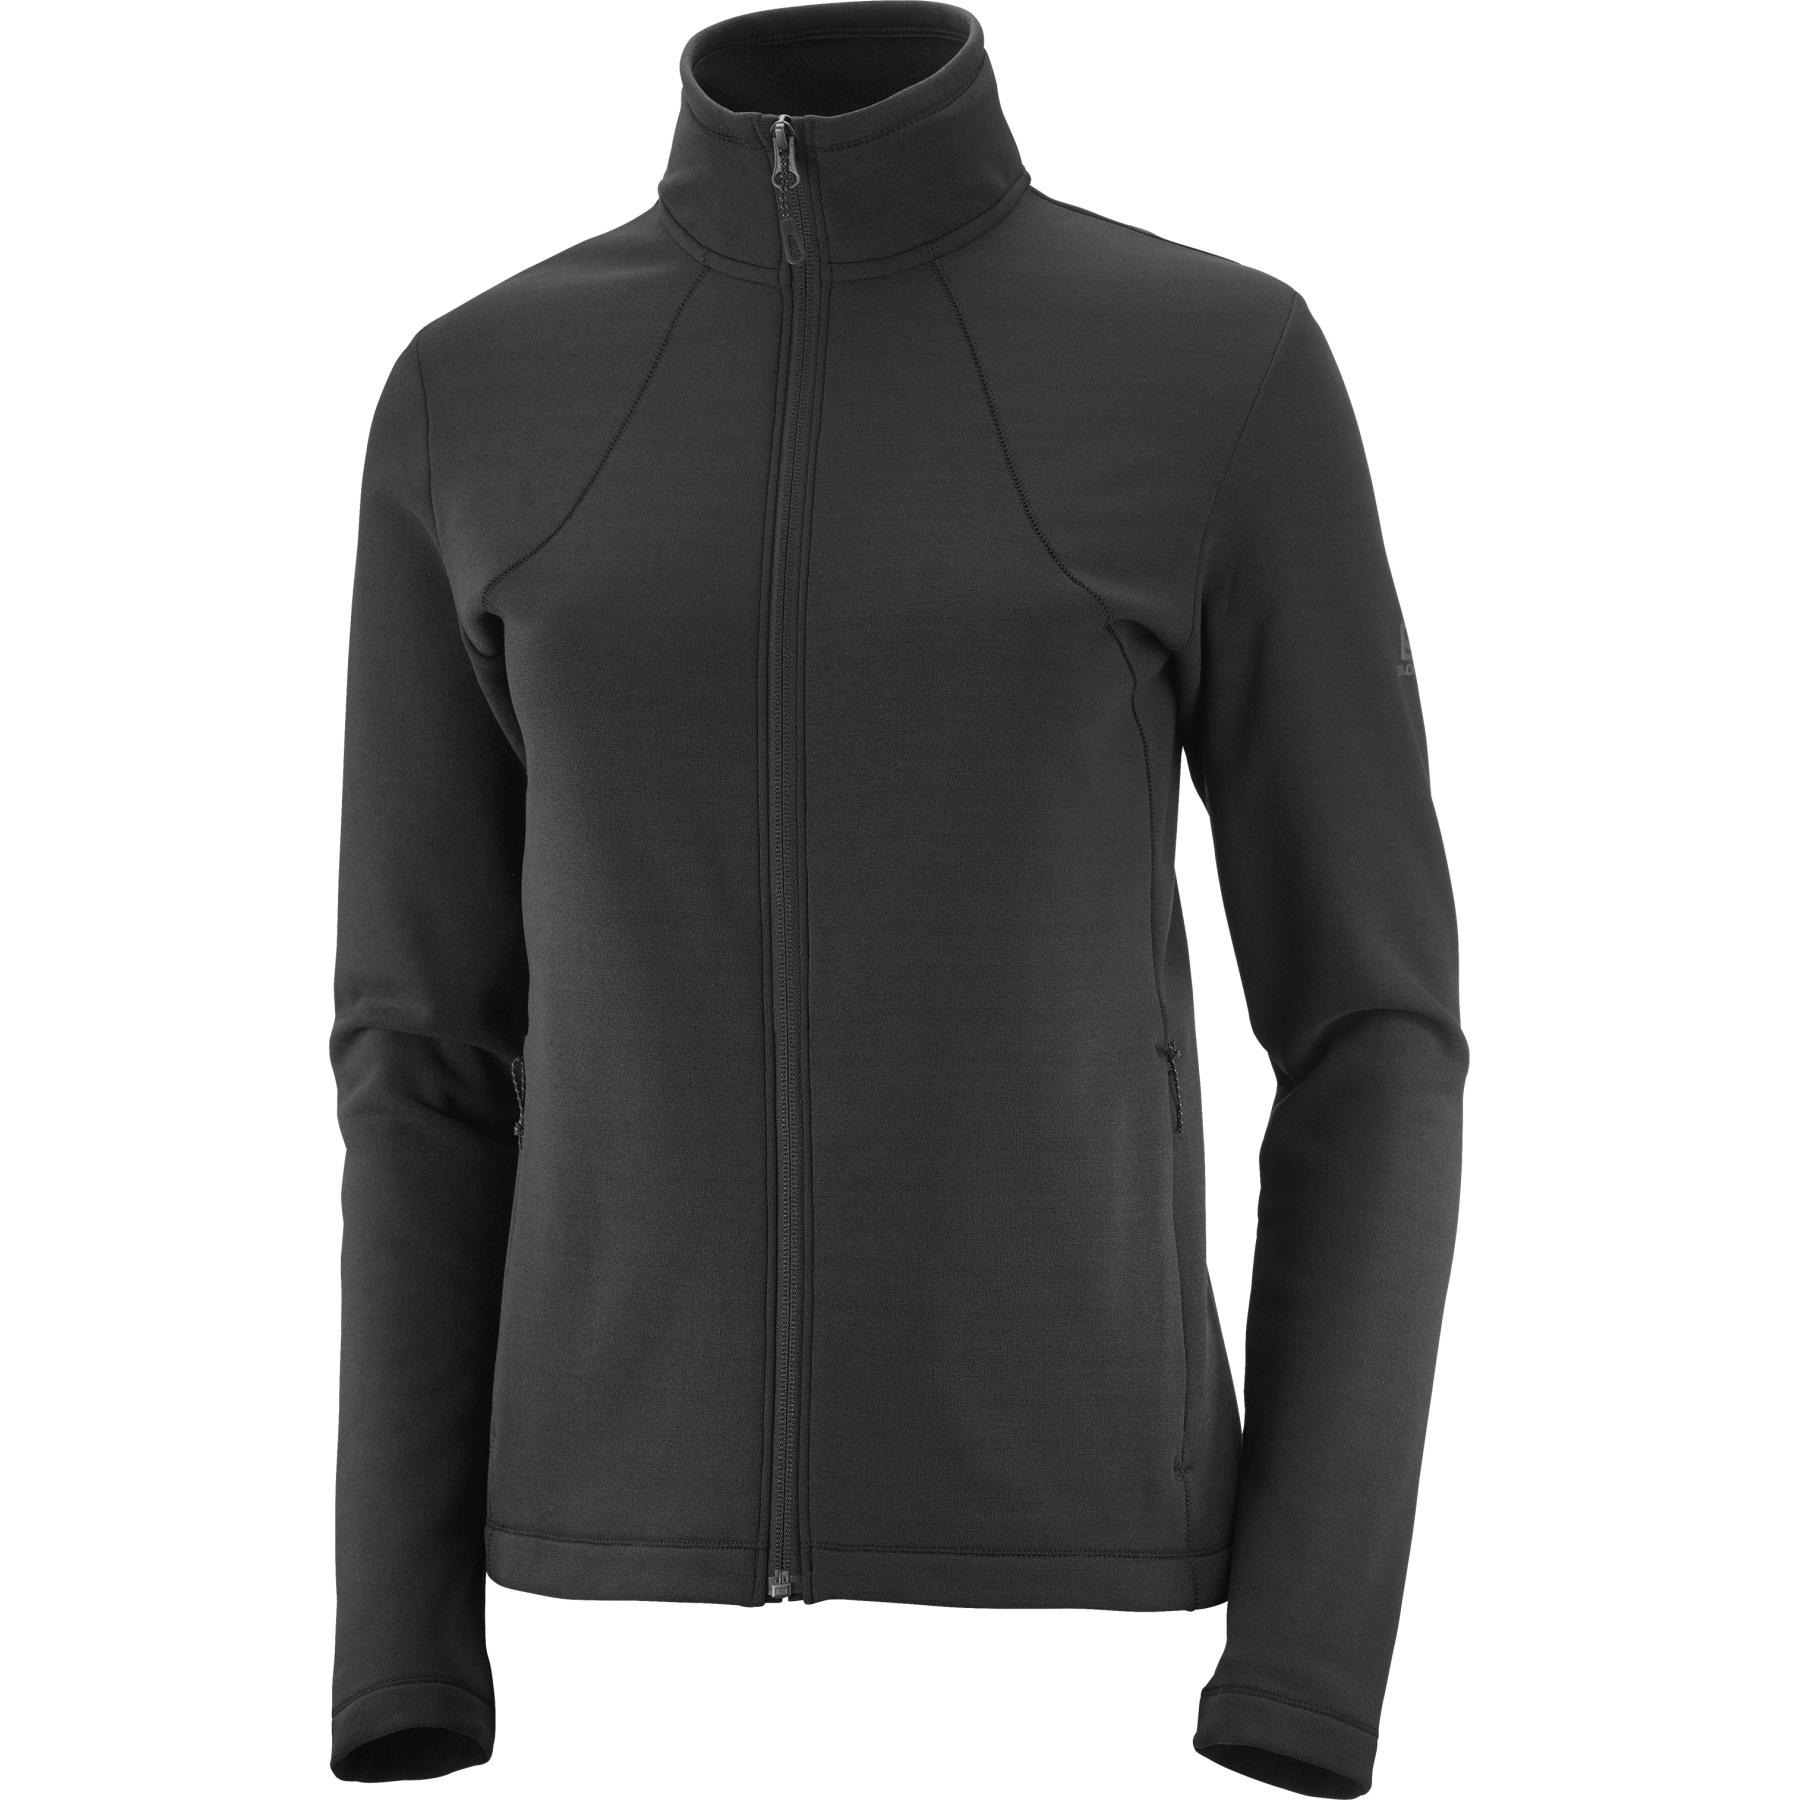 Image of Salomon Sntial Warm Full-Zip Fleece Jacket Women - black